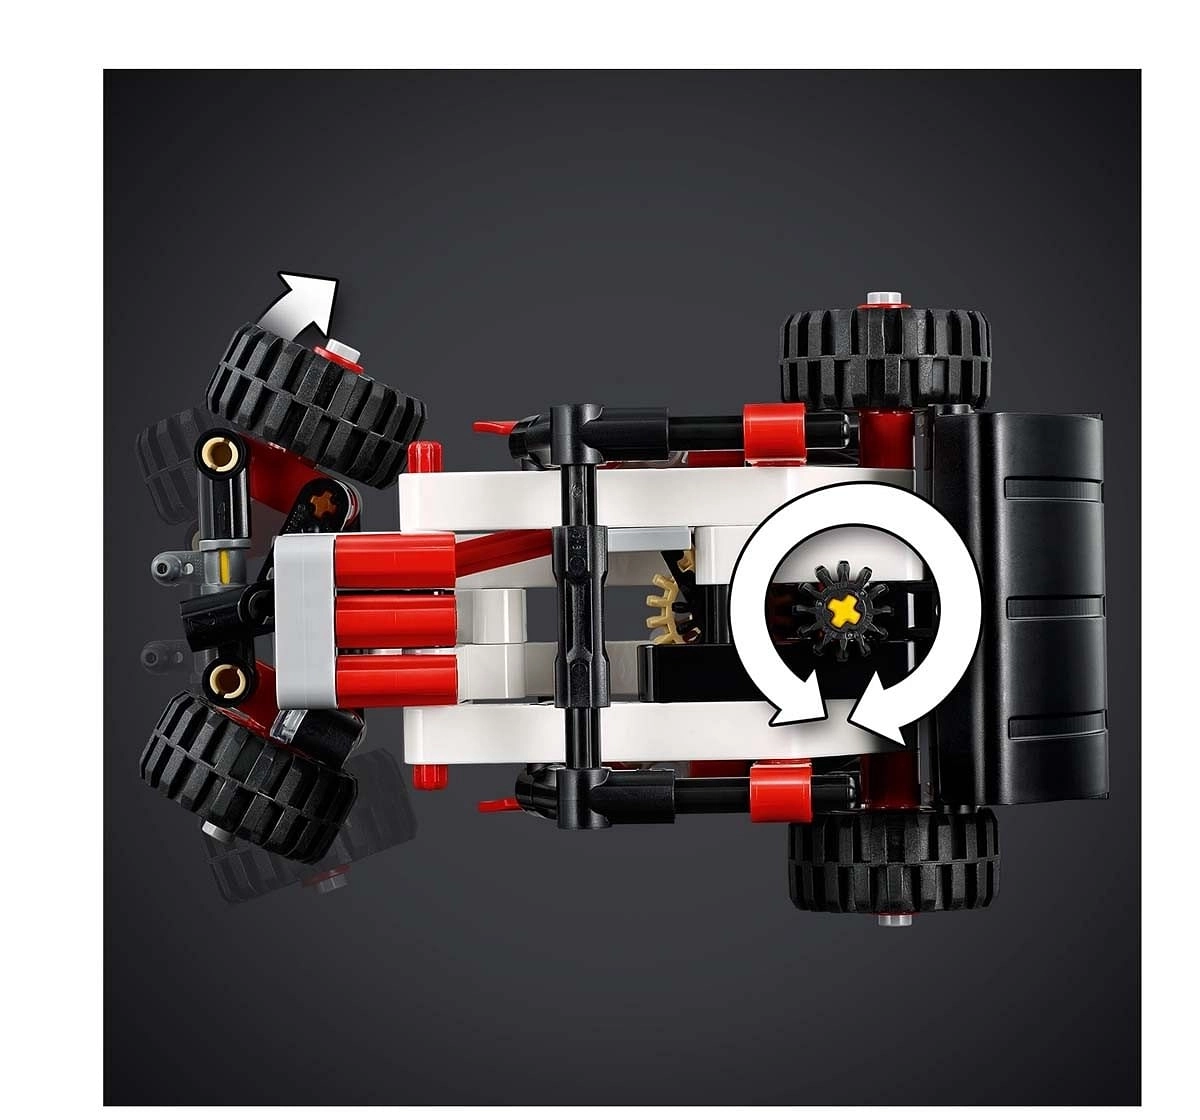 Lego Skid Steer Loader Lego Blocks for Kids Age 7Y+